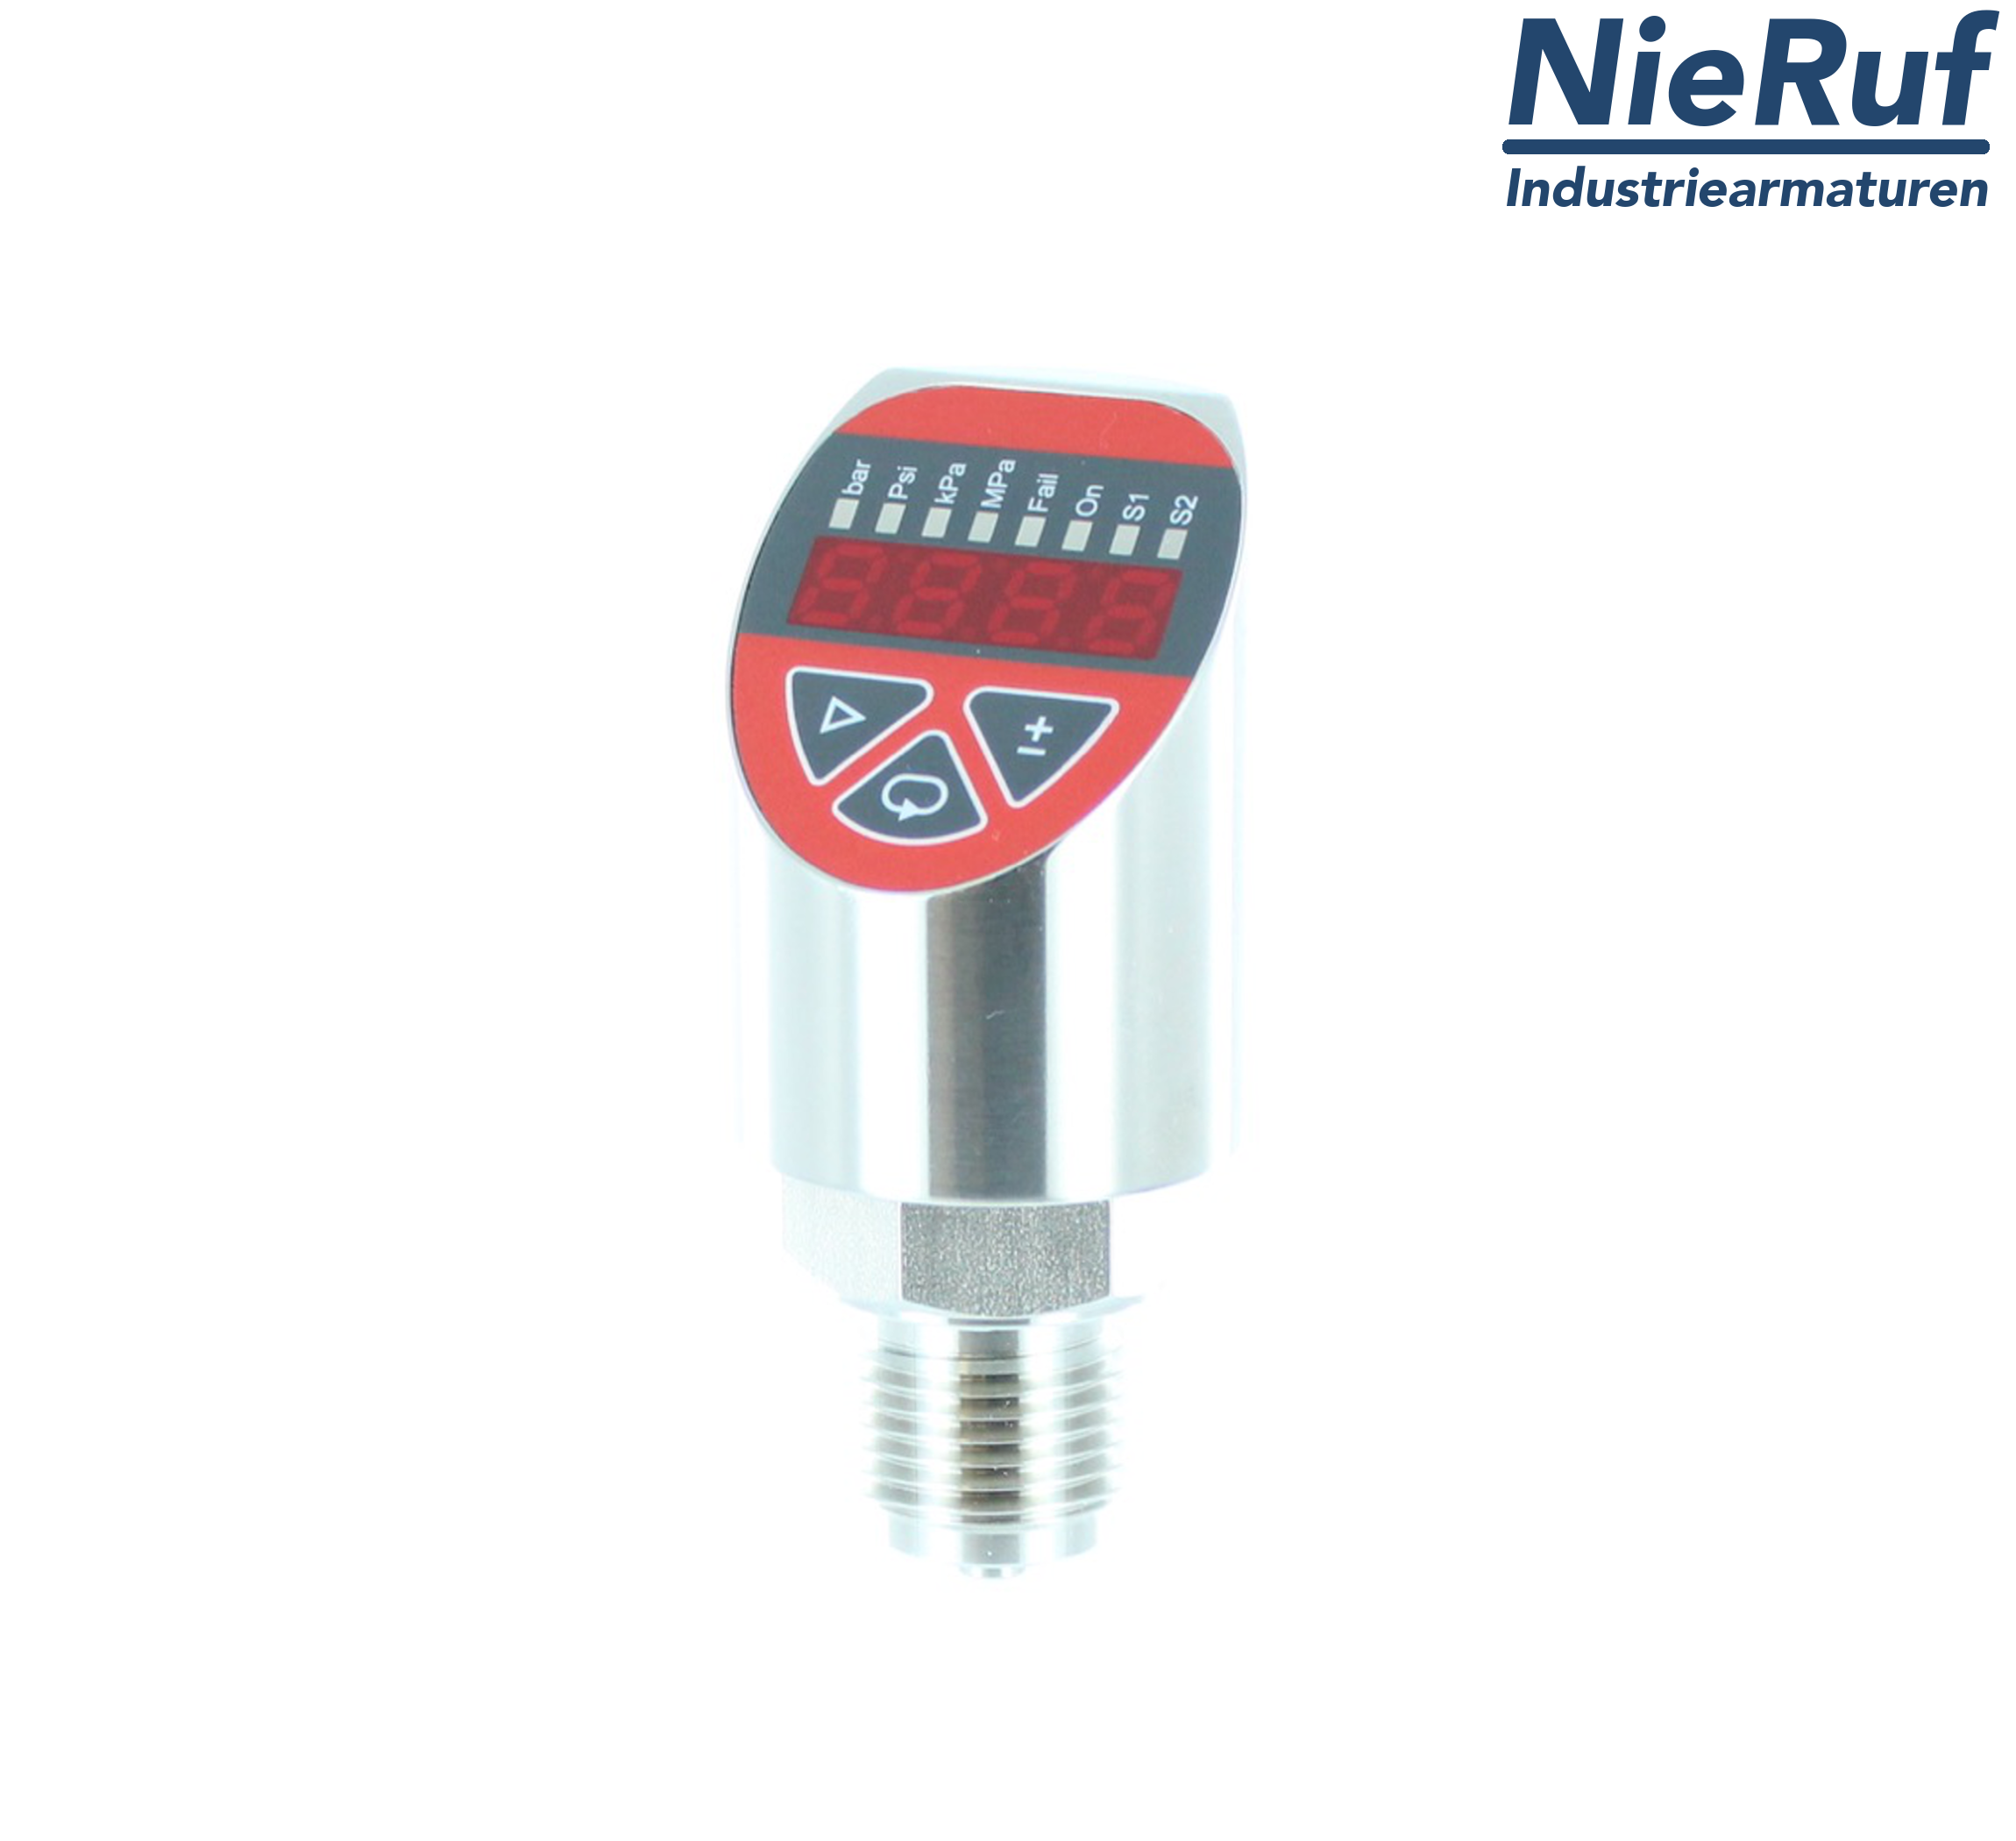 digital pressure sensor G 1/2" B IB 4-wire: 1xPNP, 1x4 - 20mA, Desina FPM 0,0 - 0,60 bar